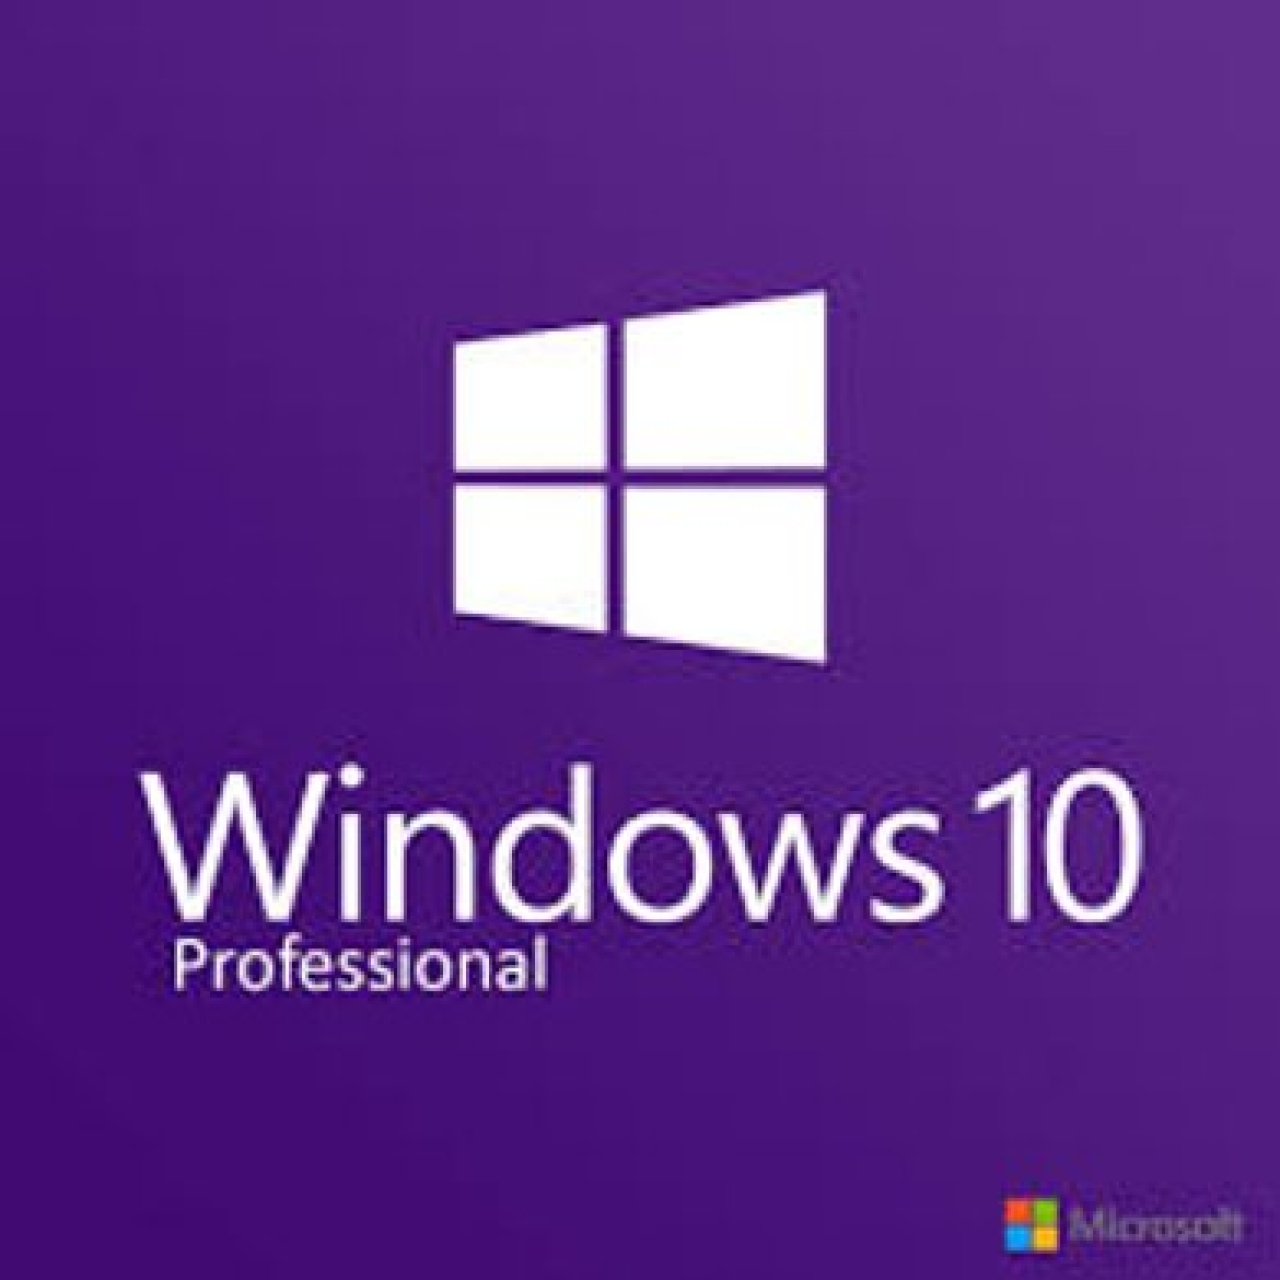 Windows 10 Pro. + Office 2021 Pro. Plus Lisans Anahtarı - RETAİL KEYLER